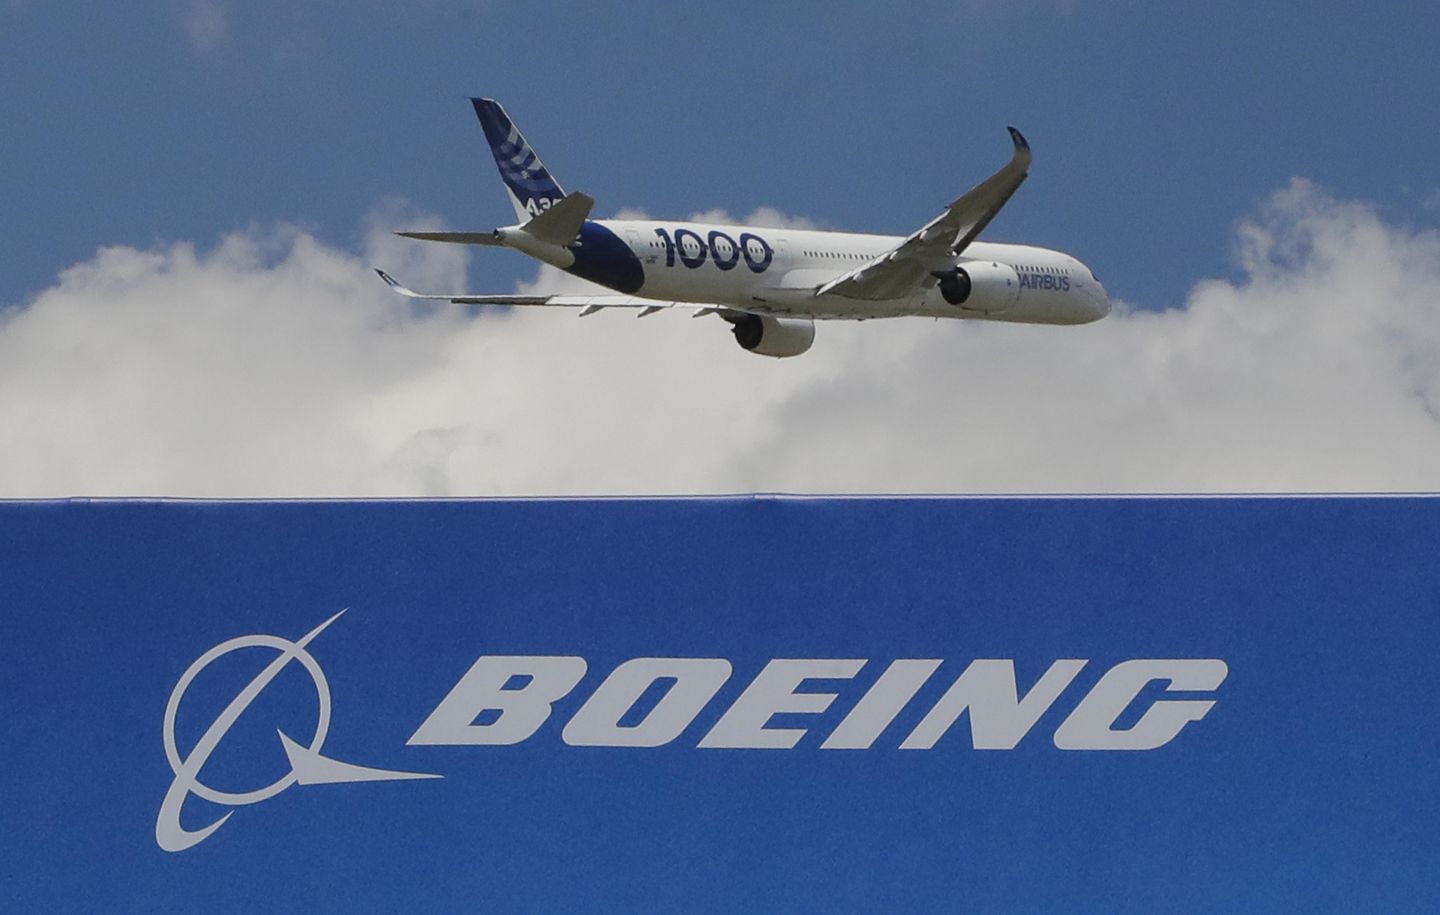 Joe Biden, Air India'ya 220 Boeing uçağı satışını duyuracak